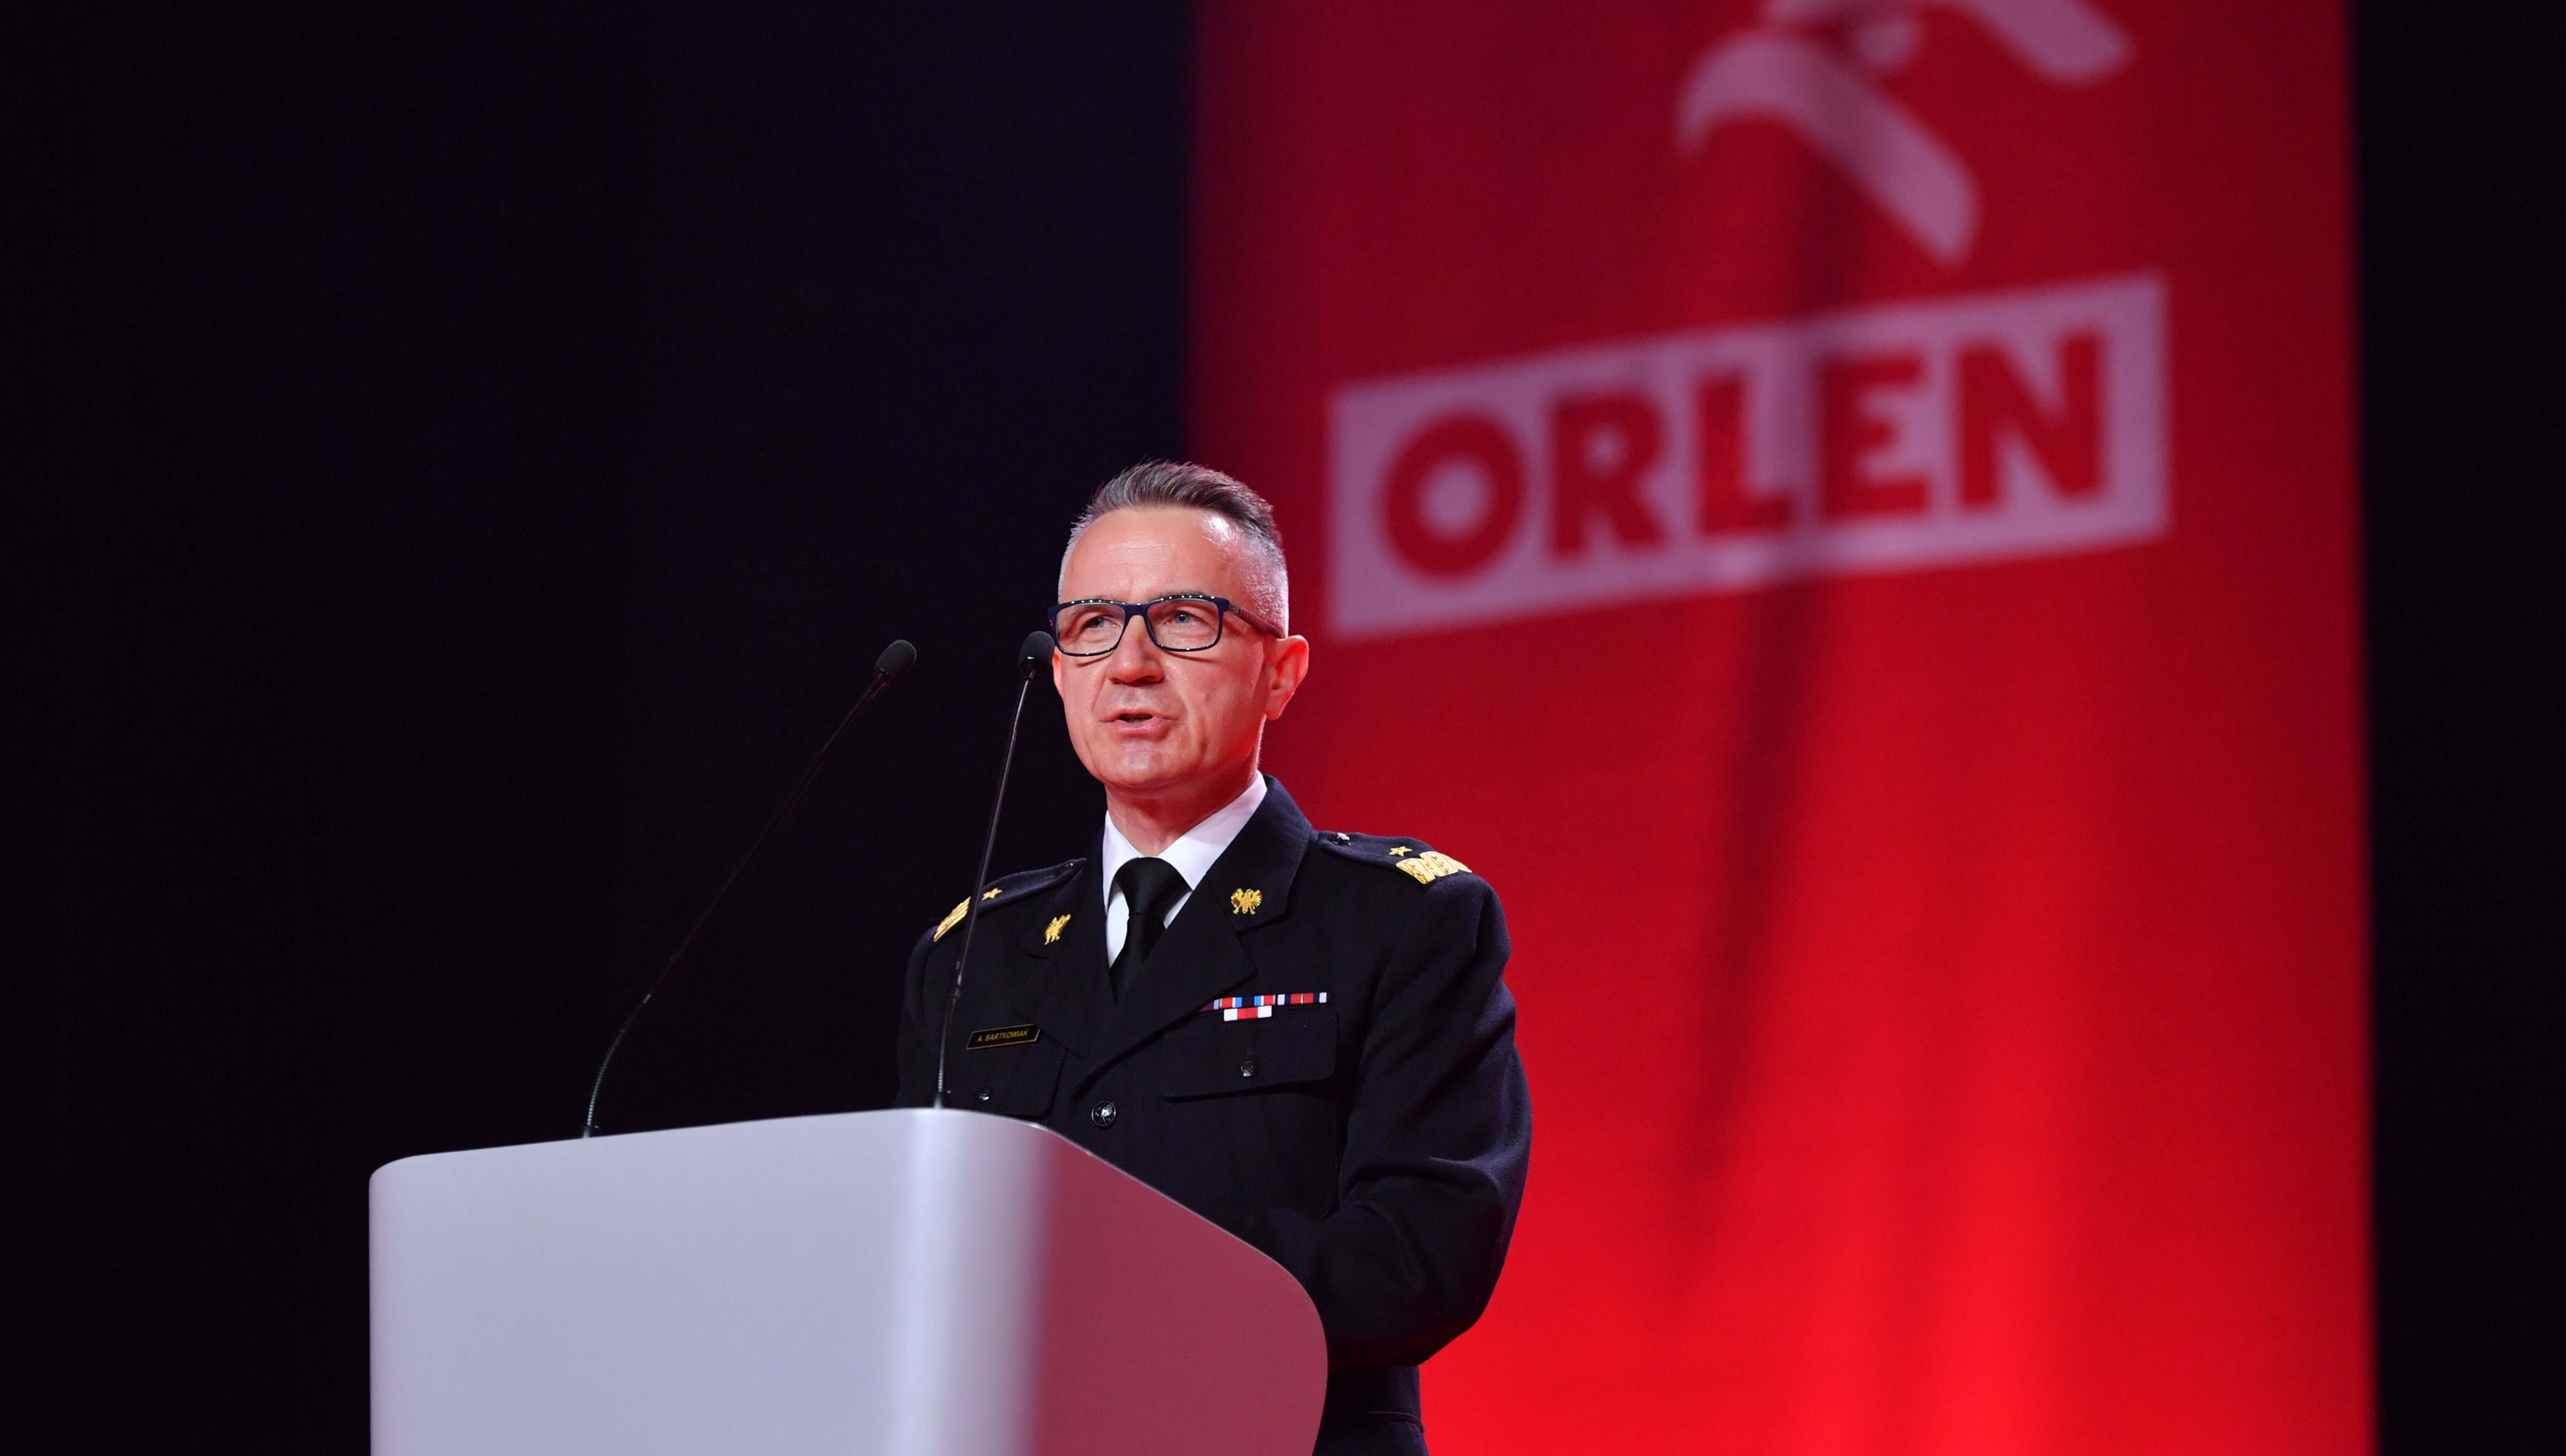 Daniel Obajtek: "Orlen for Firemen" program is an expression of corporate social responsibility